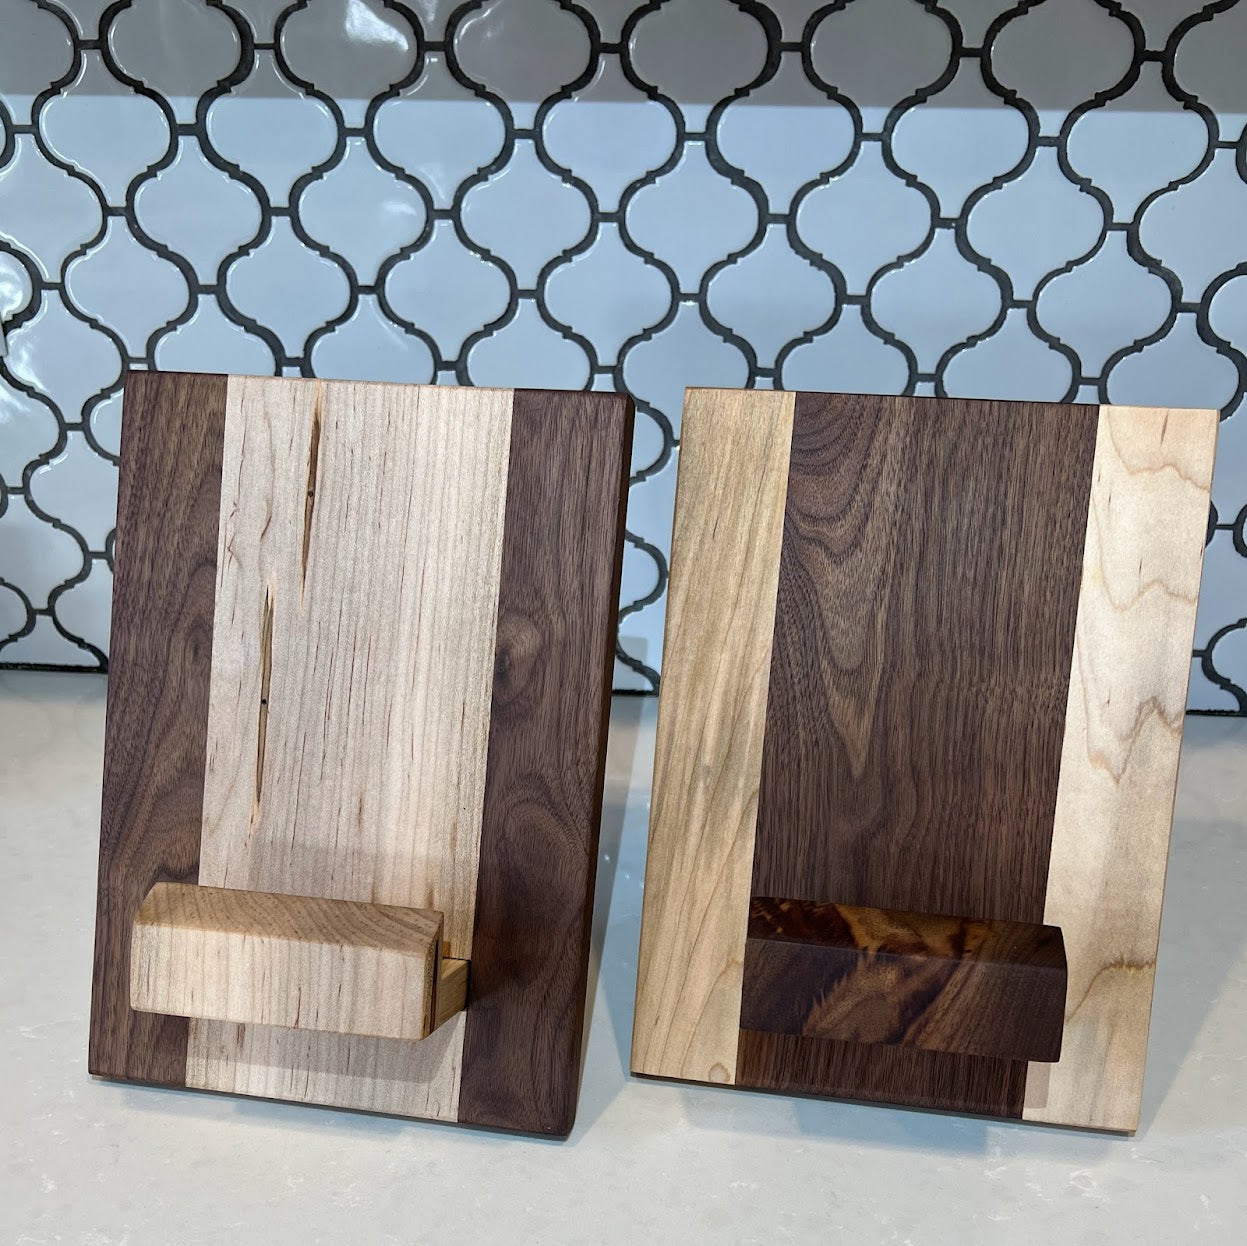 TILISMA Handmade Wooden Book Stand - Cookbook & Tablet Holder - TILISMA